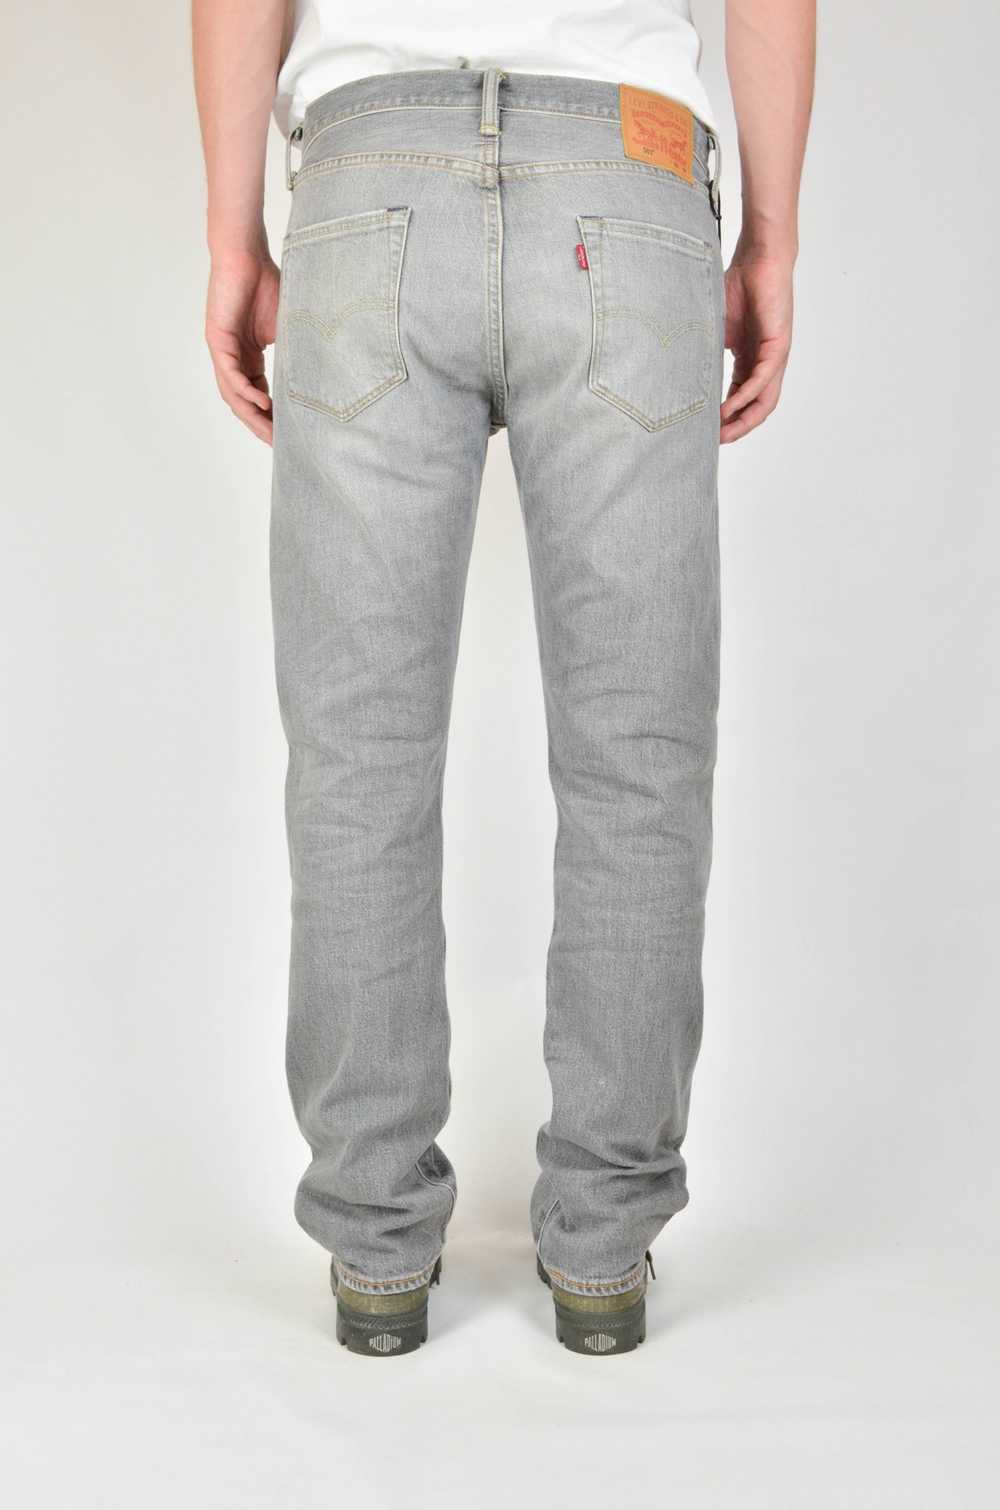 Levi's Vintage Levis 501 Jeans Grey - image 2